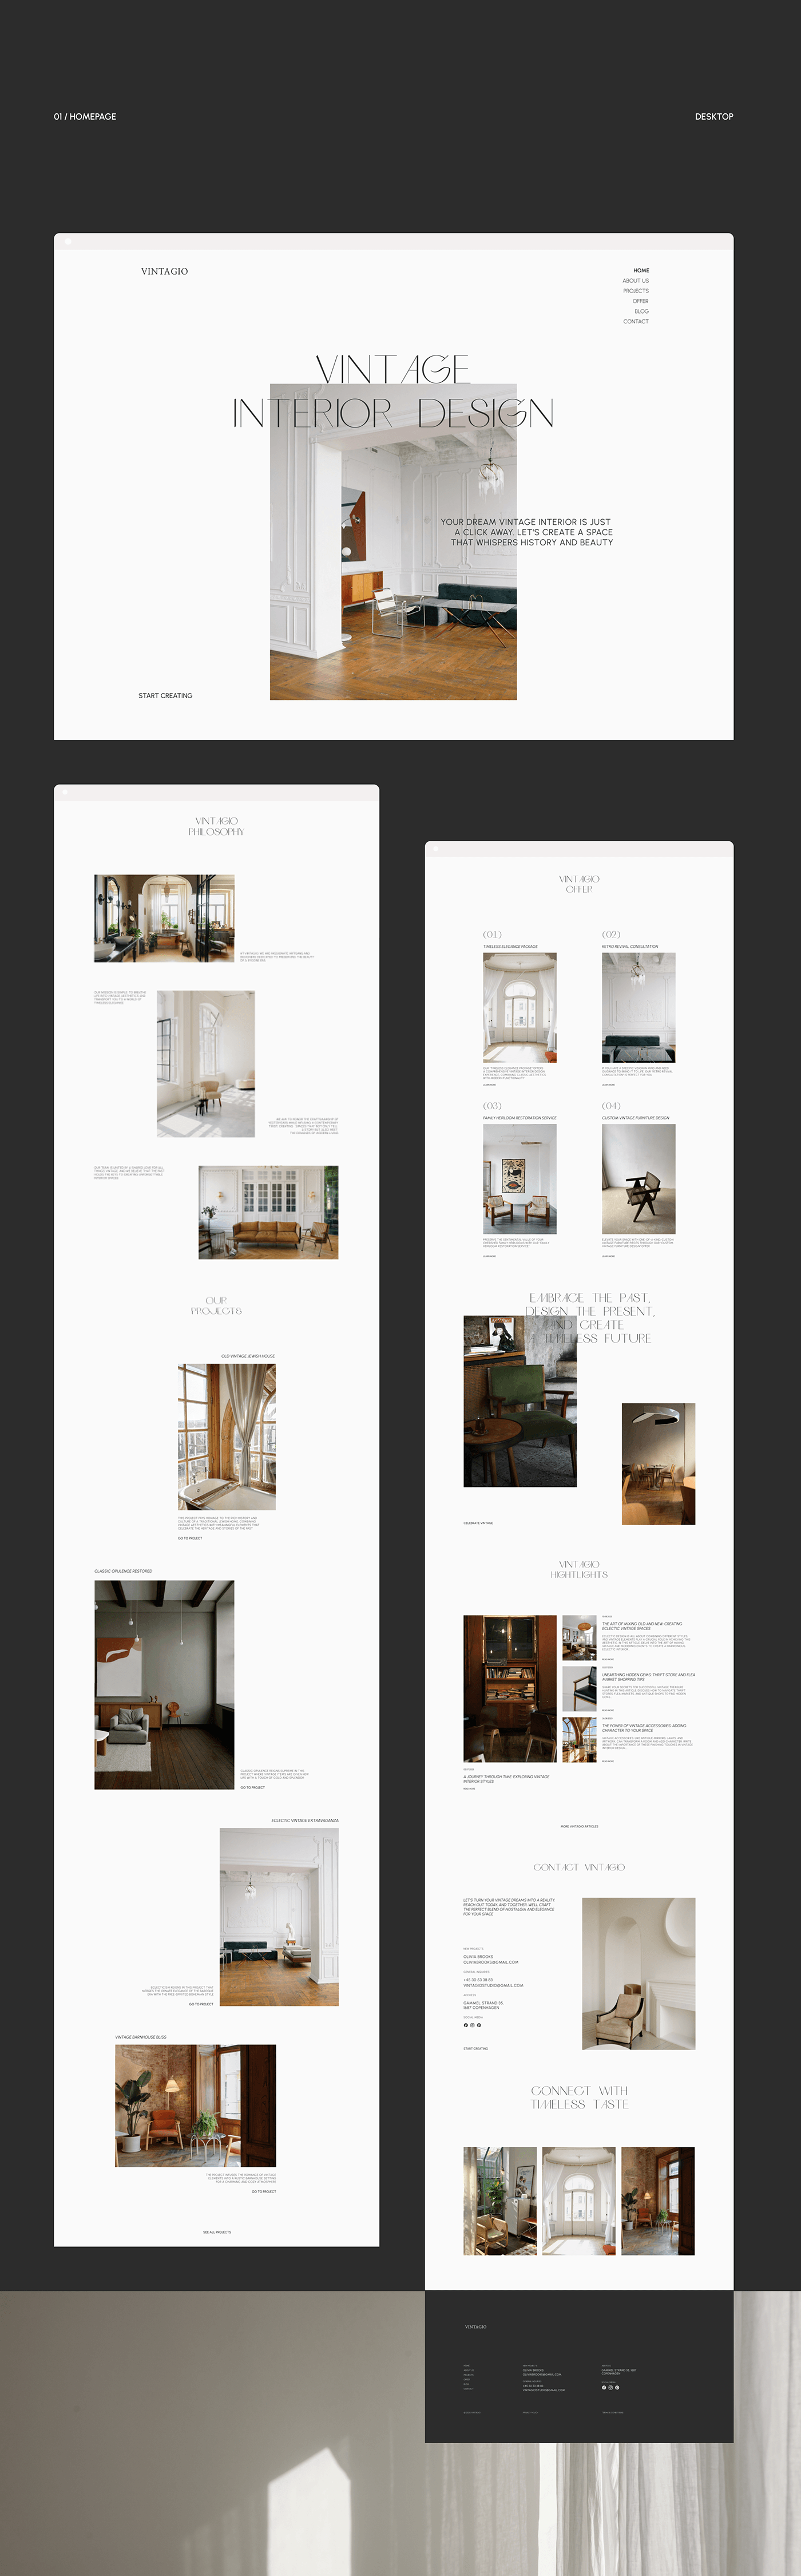 Web Design  UI/UX corporate website interior design  minimalistic website interior studio Website Design user interface Figma user experience